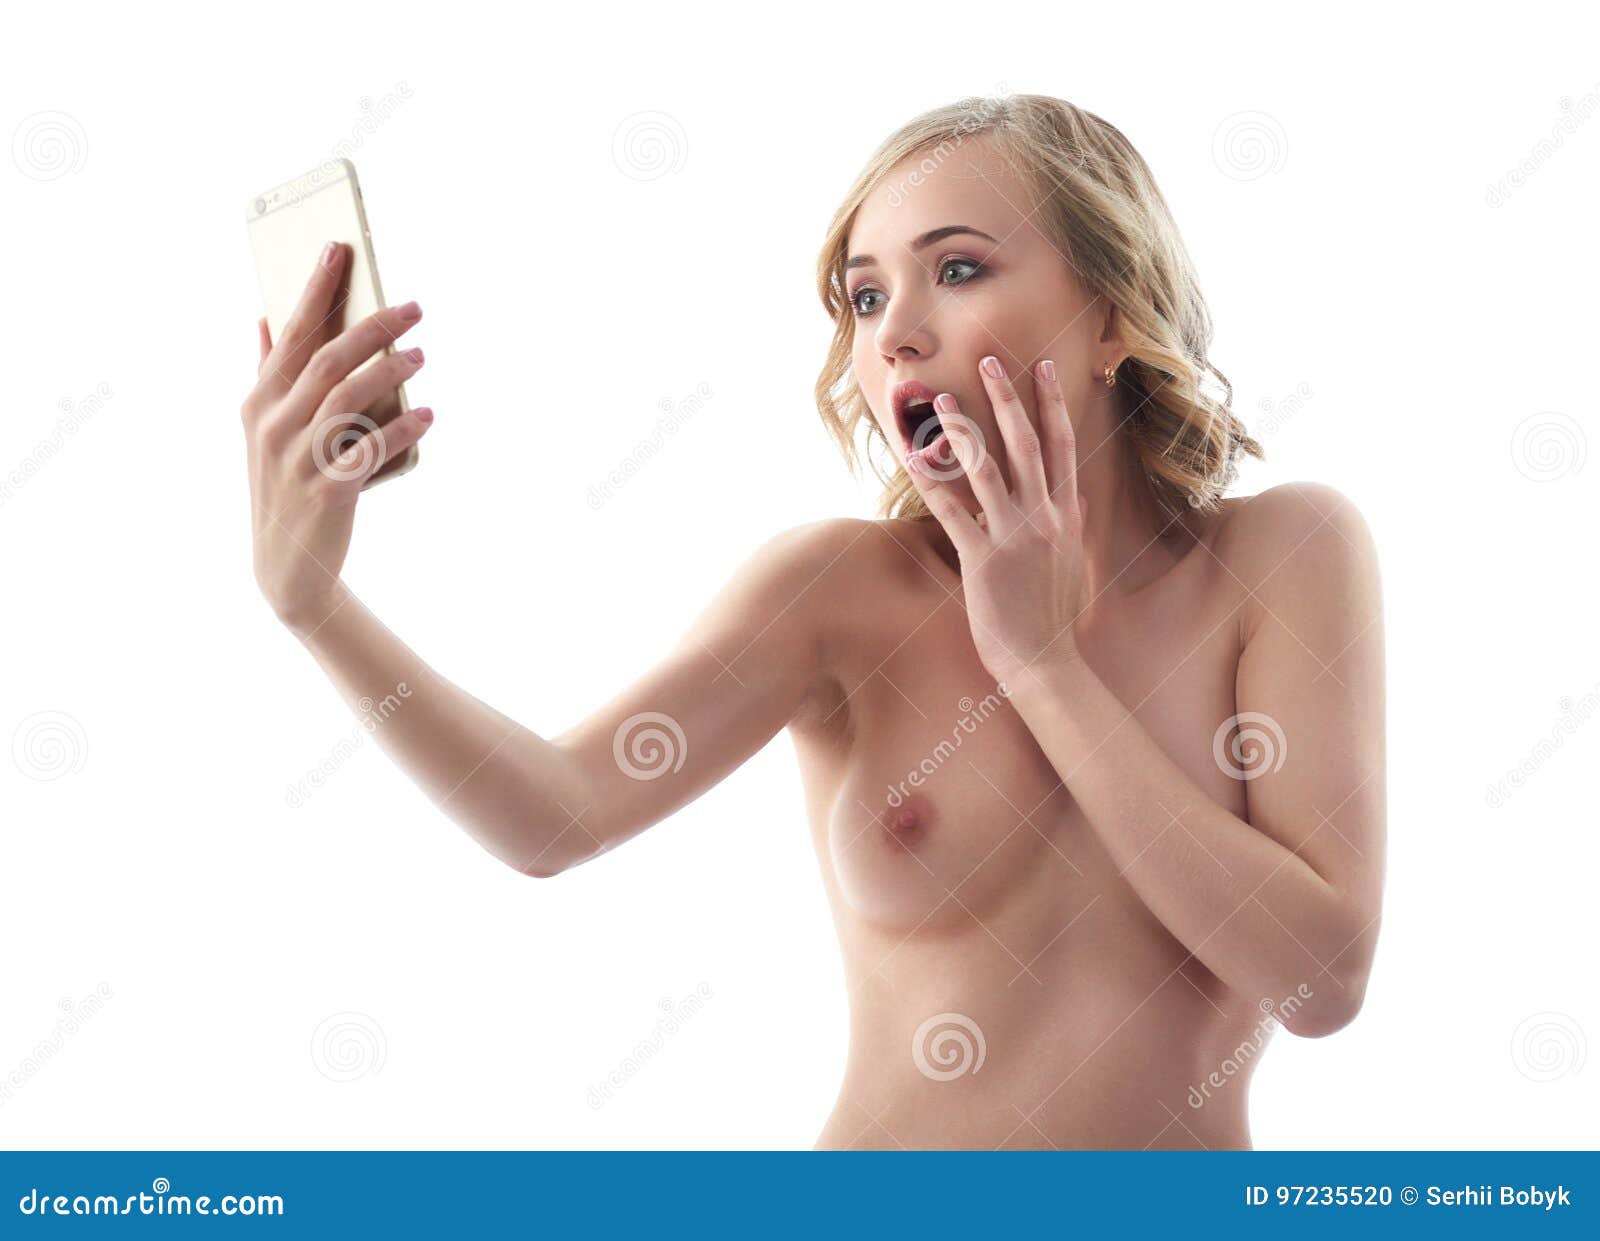 Naked Woman Selfies